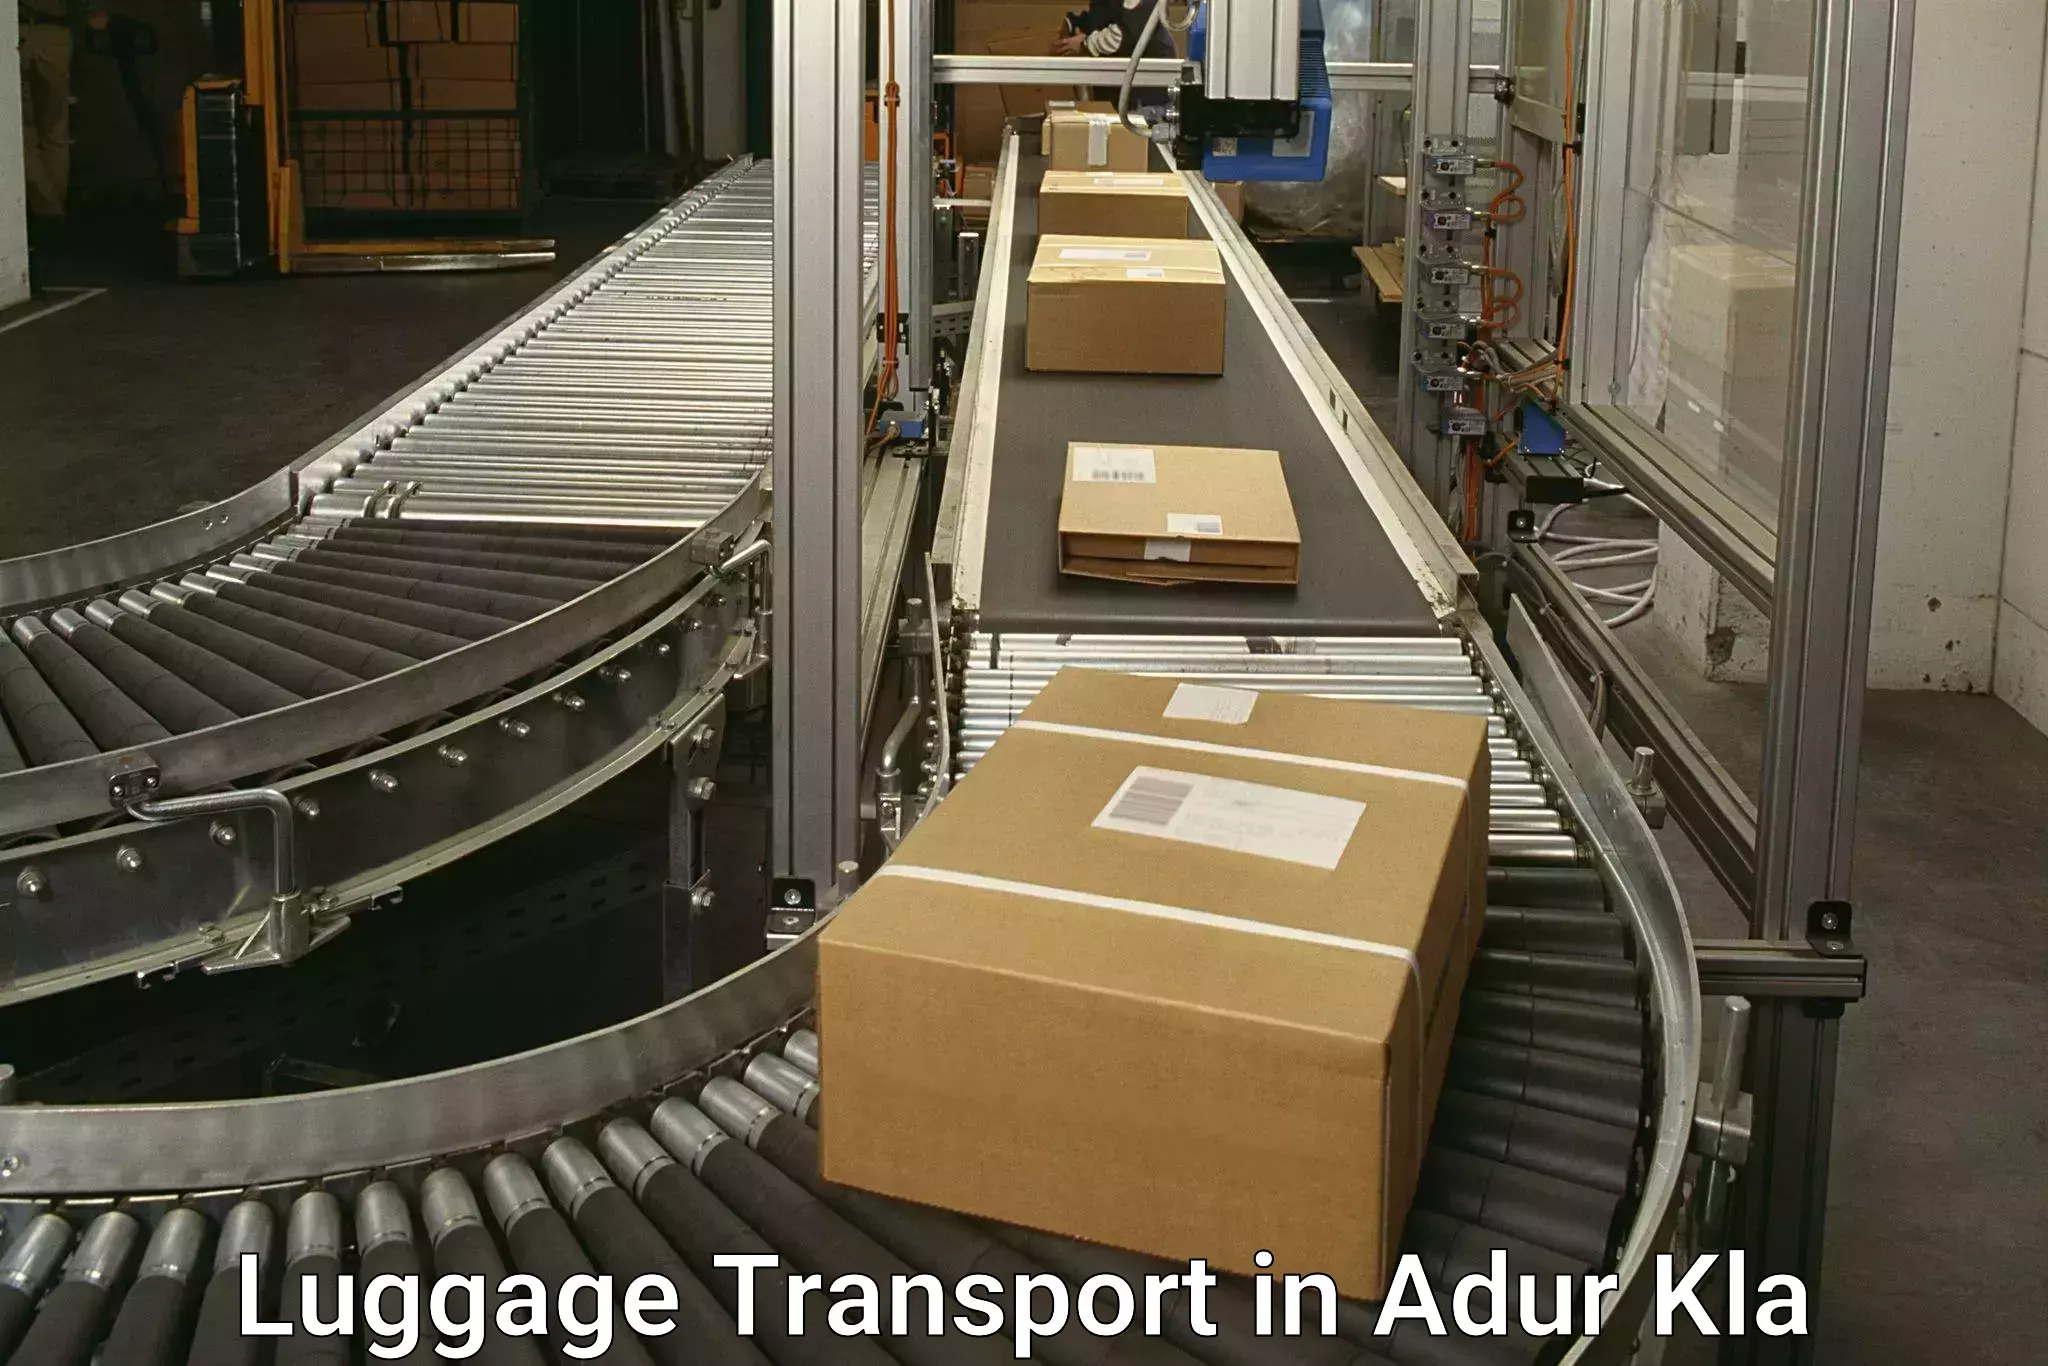 Weekend baggage shipping in Adur Kla